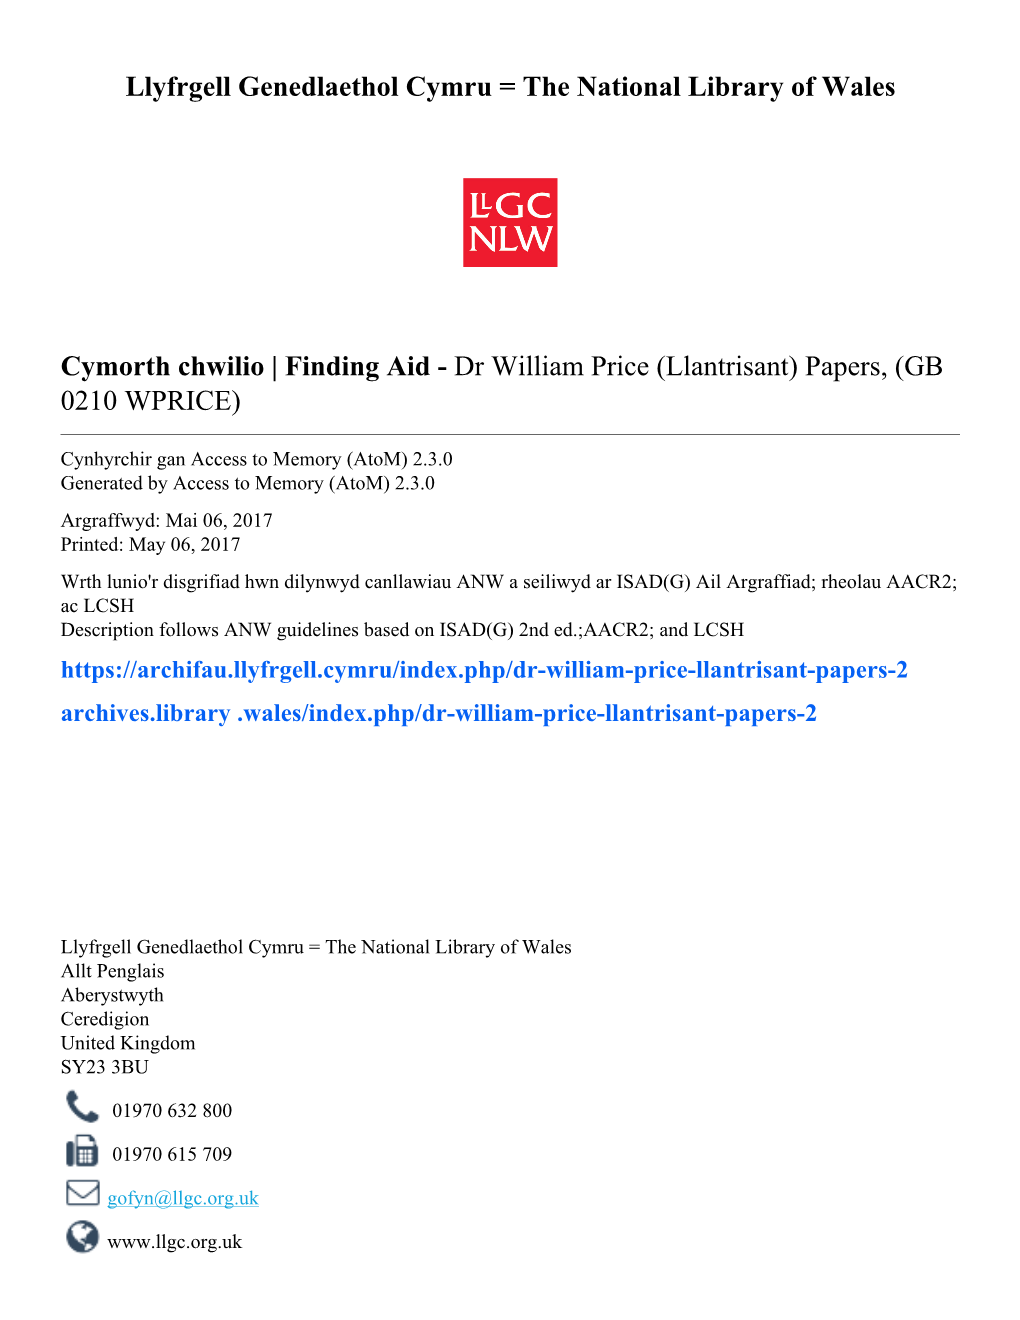 Dr William Price (Llantrisant) Papers, (GB 0210 WPRICE)